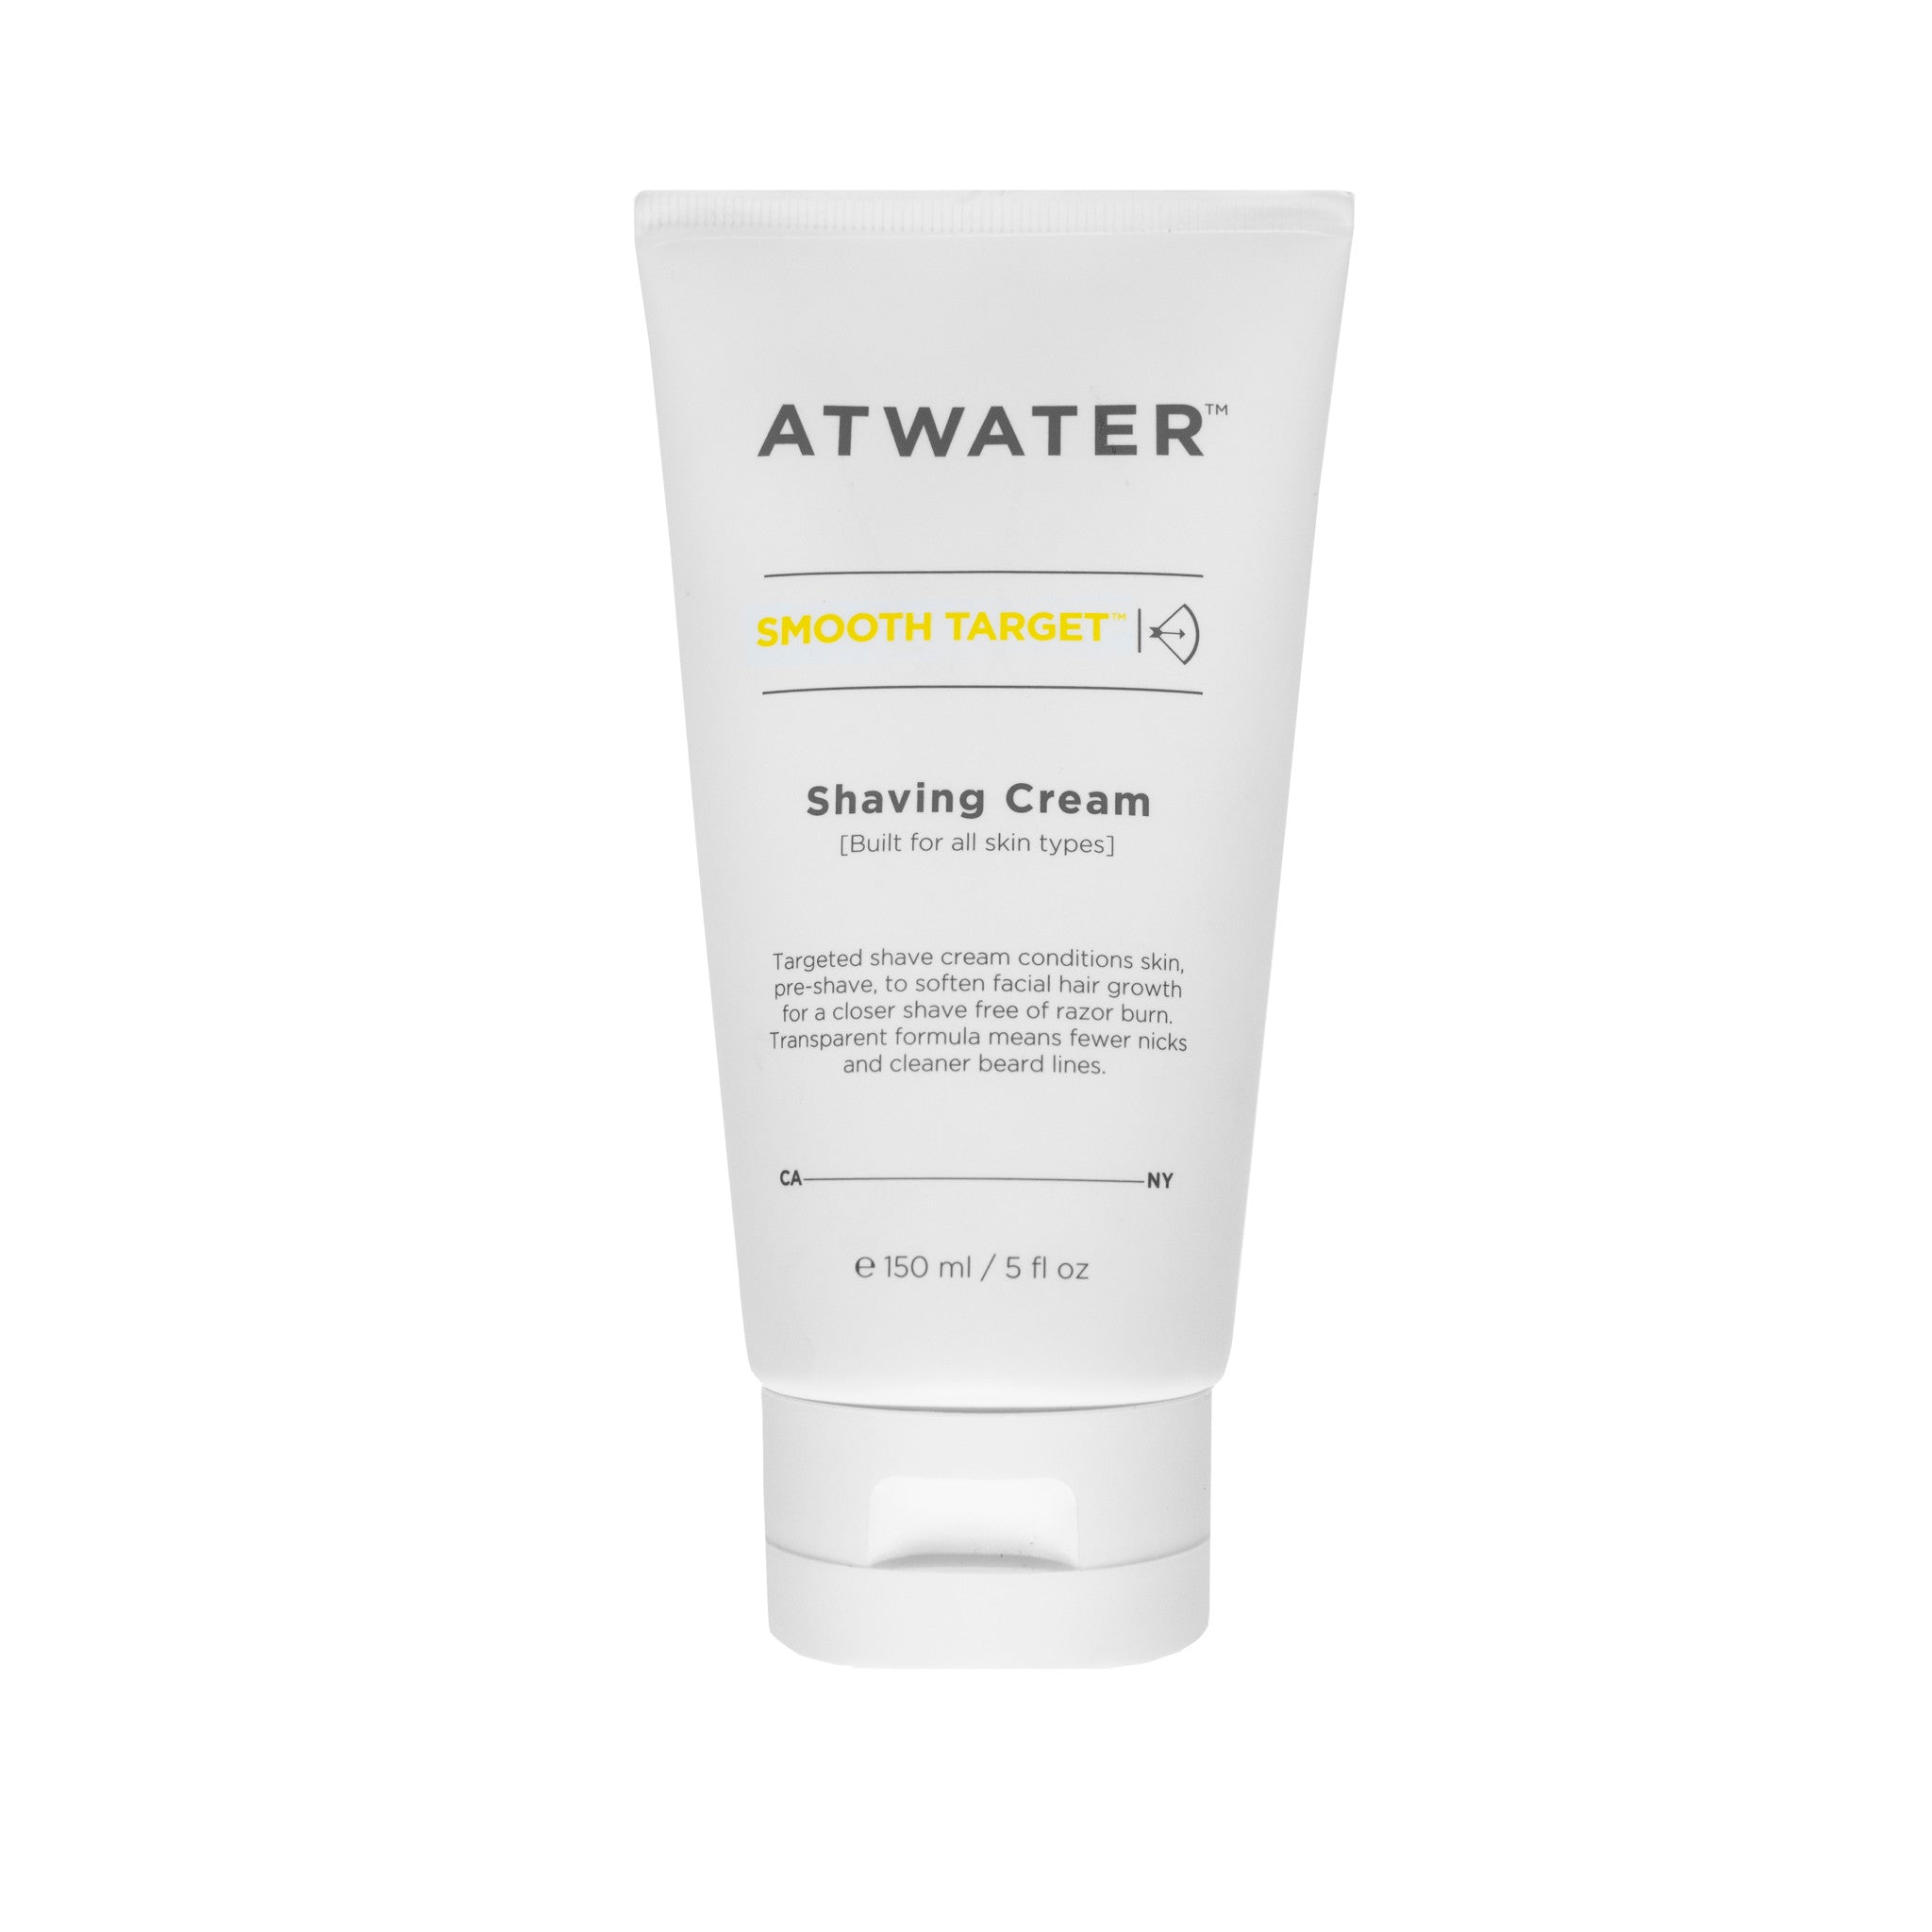 Atwater Smooth Target Shaving Cream main image.